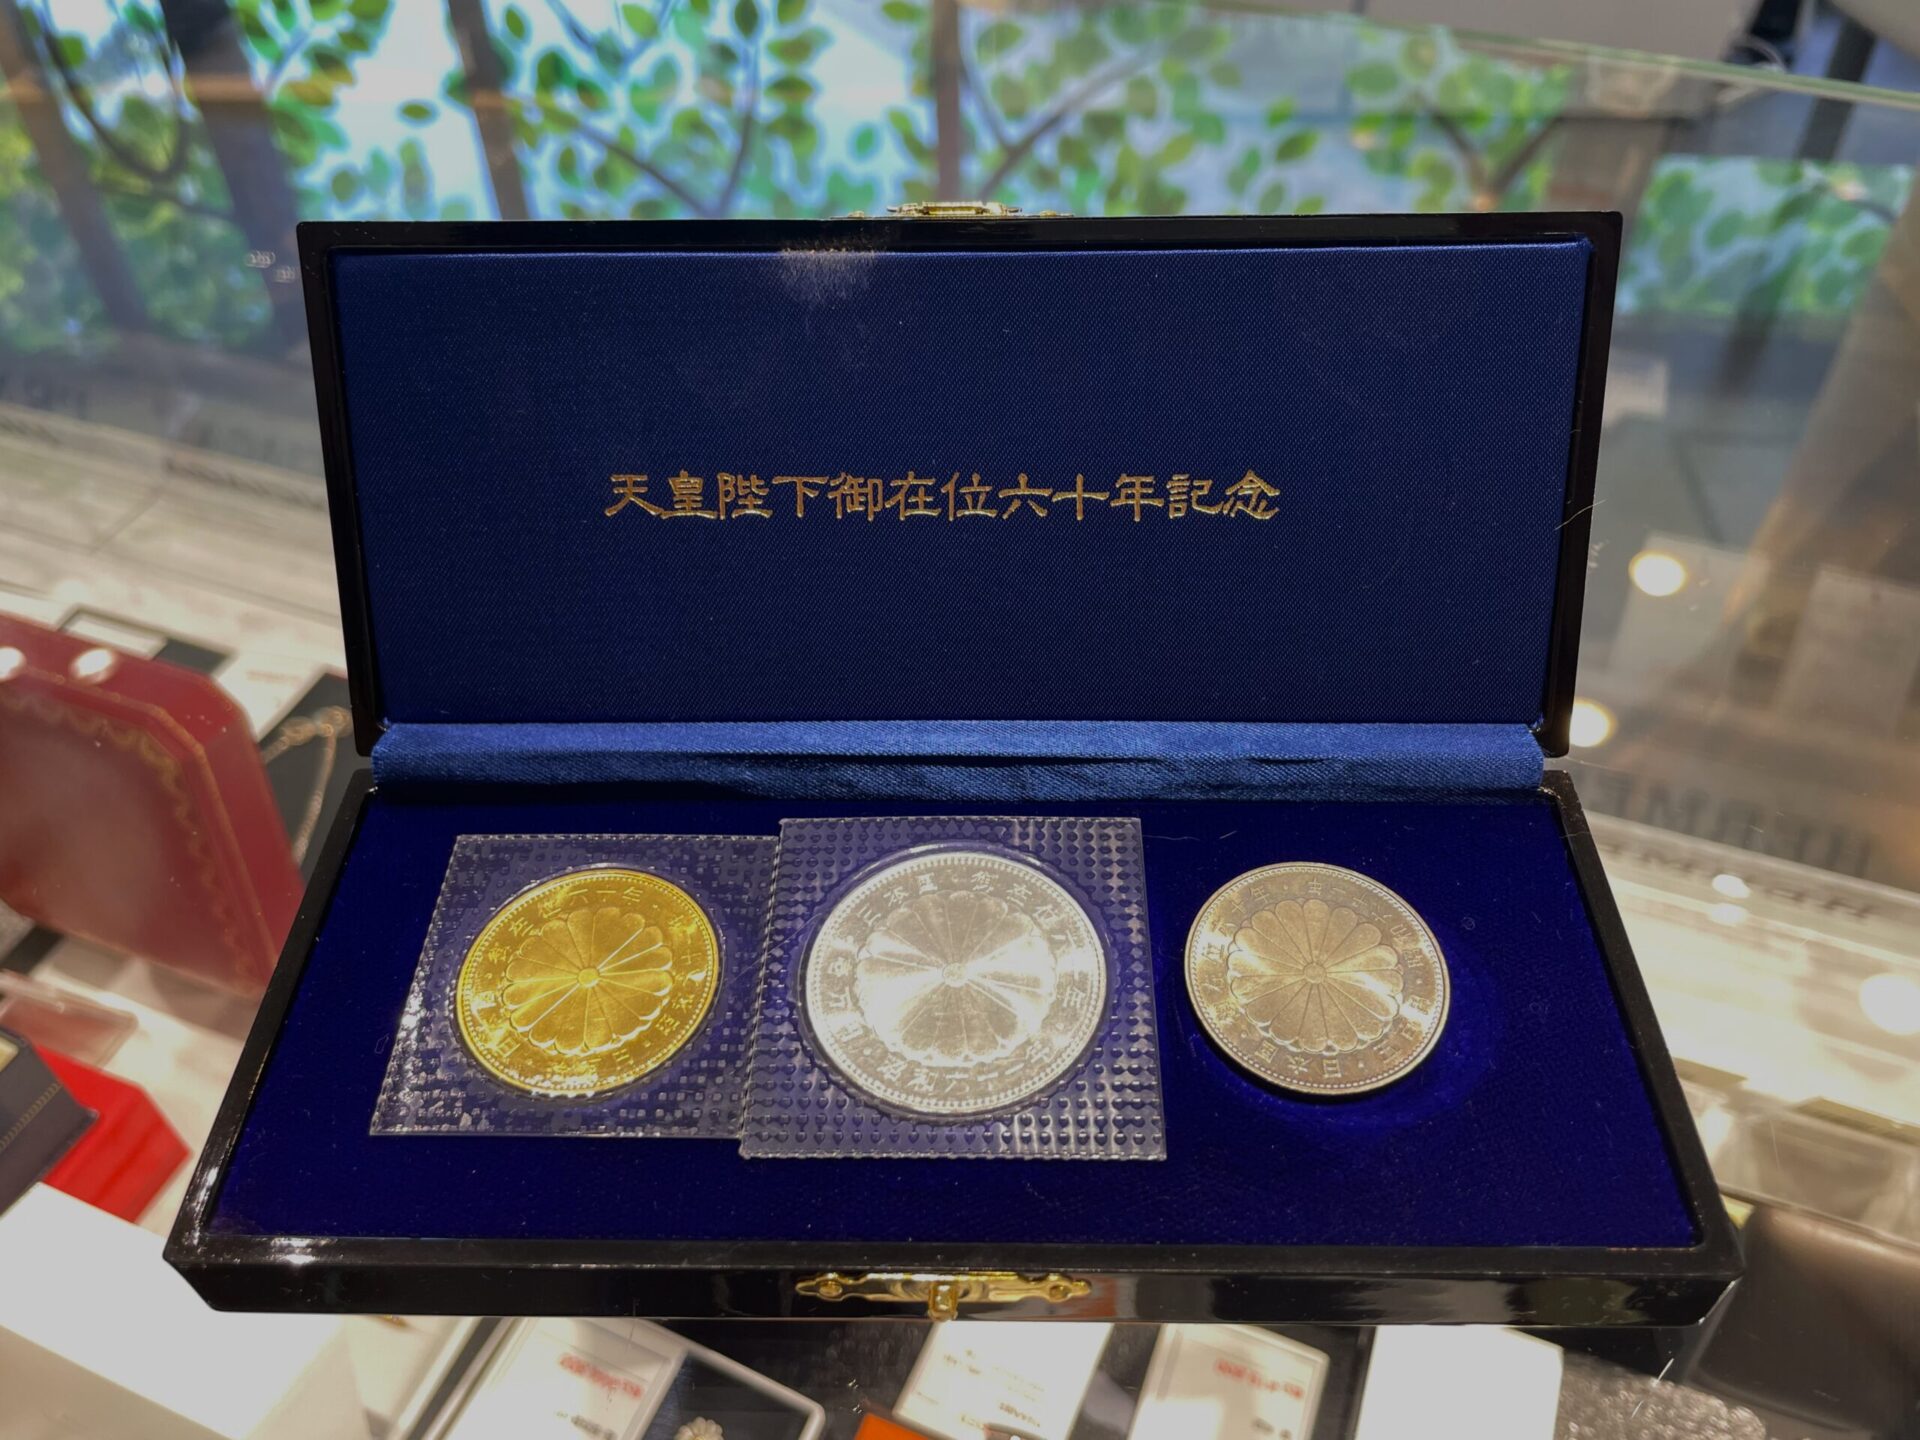 天皇陛下御在位60年記念硬貨 2点セット◇1万円銀貨◇500円白銅貨 | www